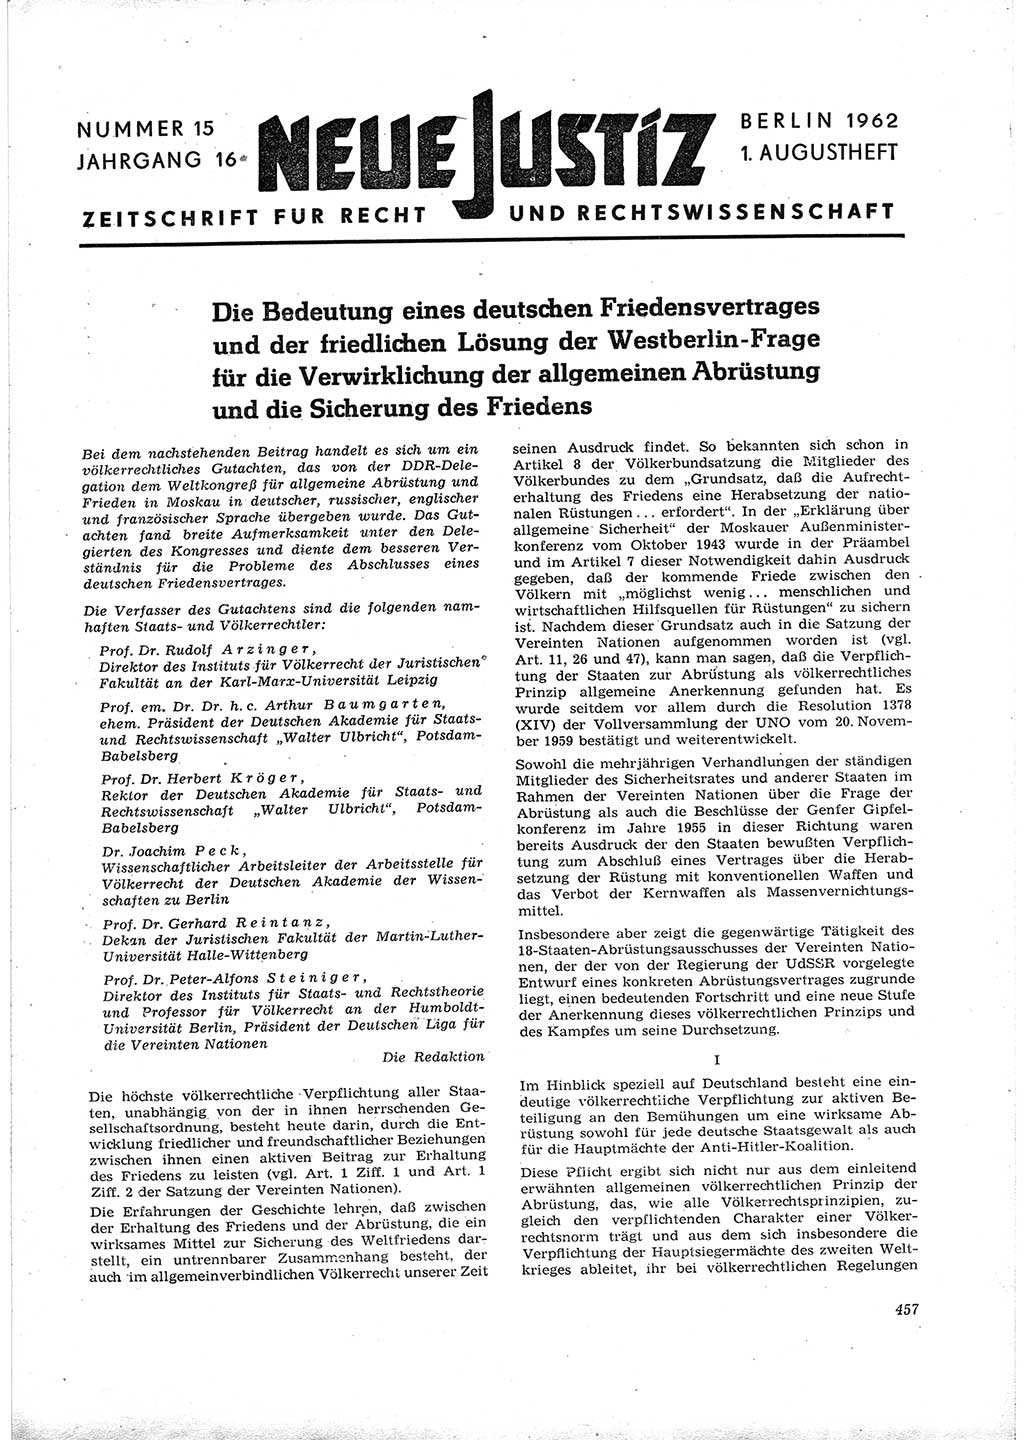 Neue Justiz (NJ), Zeitschrift für Recht und Rechtswissenschaft [Deutsche Demokratische Republik (DDR)], 16. Jahrgang 1962, Seite 457 (NJ DDR 1962, S. 457)